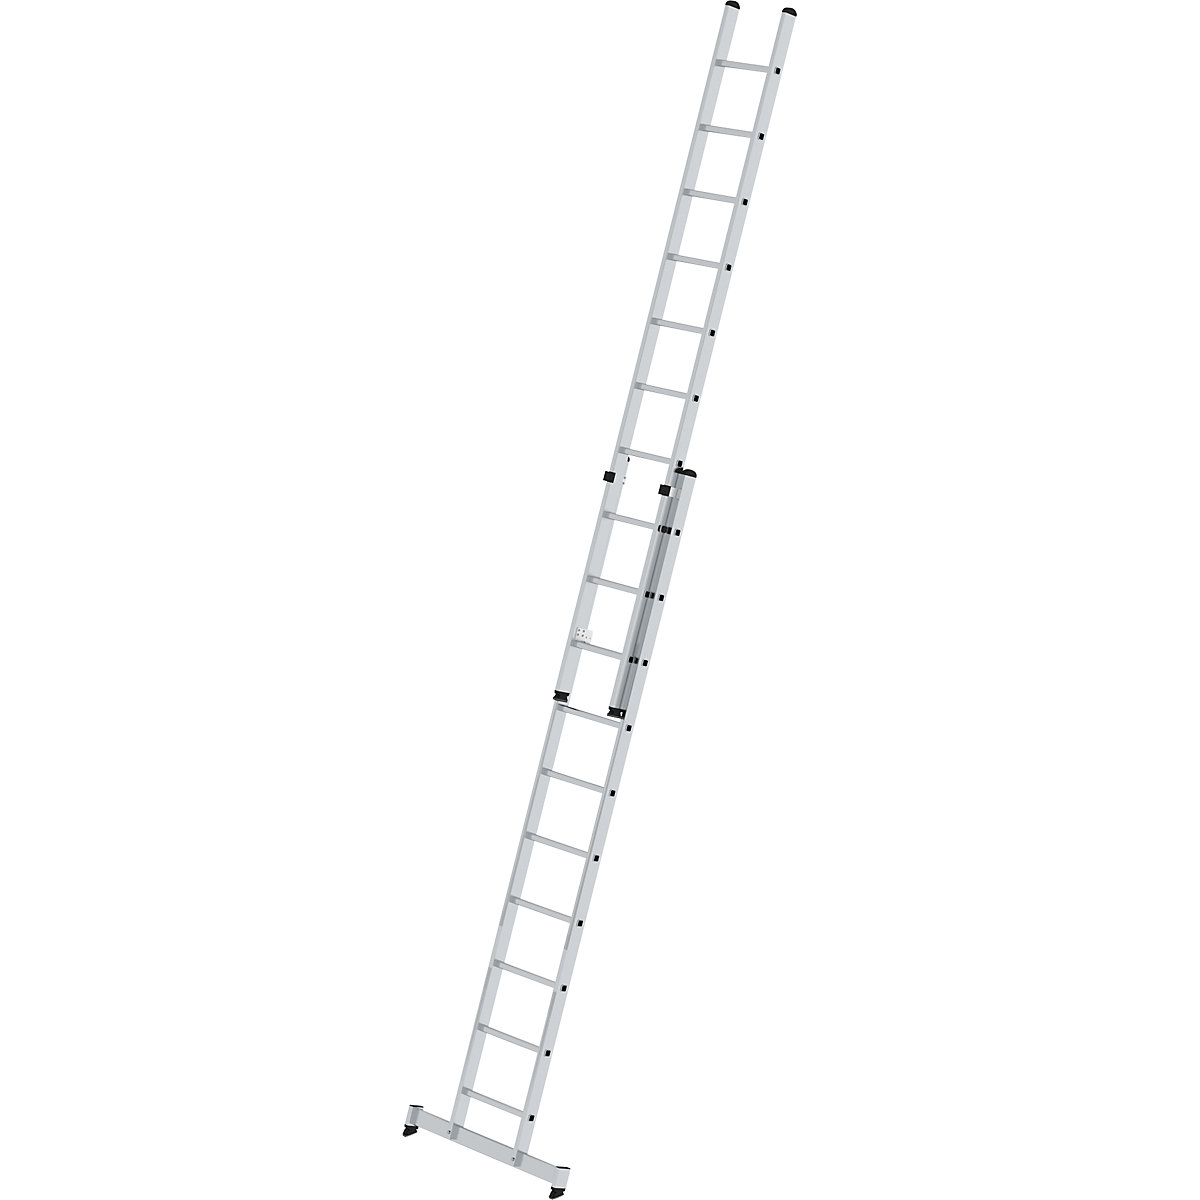 Escalera de mano de altura regulable – MUNK, escalera extensible de 2 tramos, 2 x 10 peldaños estrechos, con traviesa nivello®-5